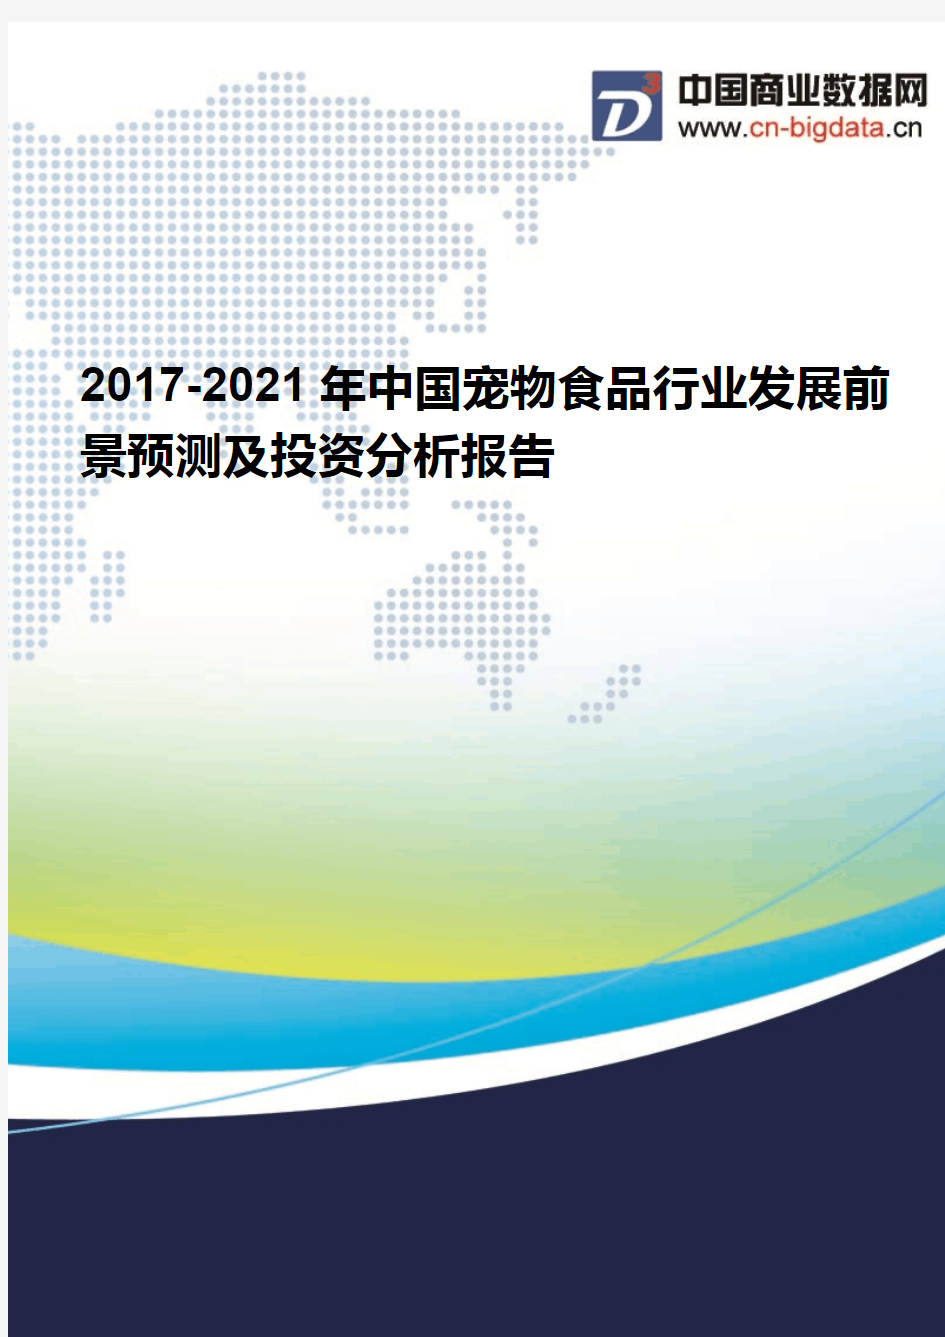 2017-2021年中国宠物食品行业发展前景预测及投资分析报告